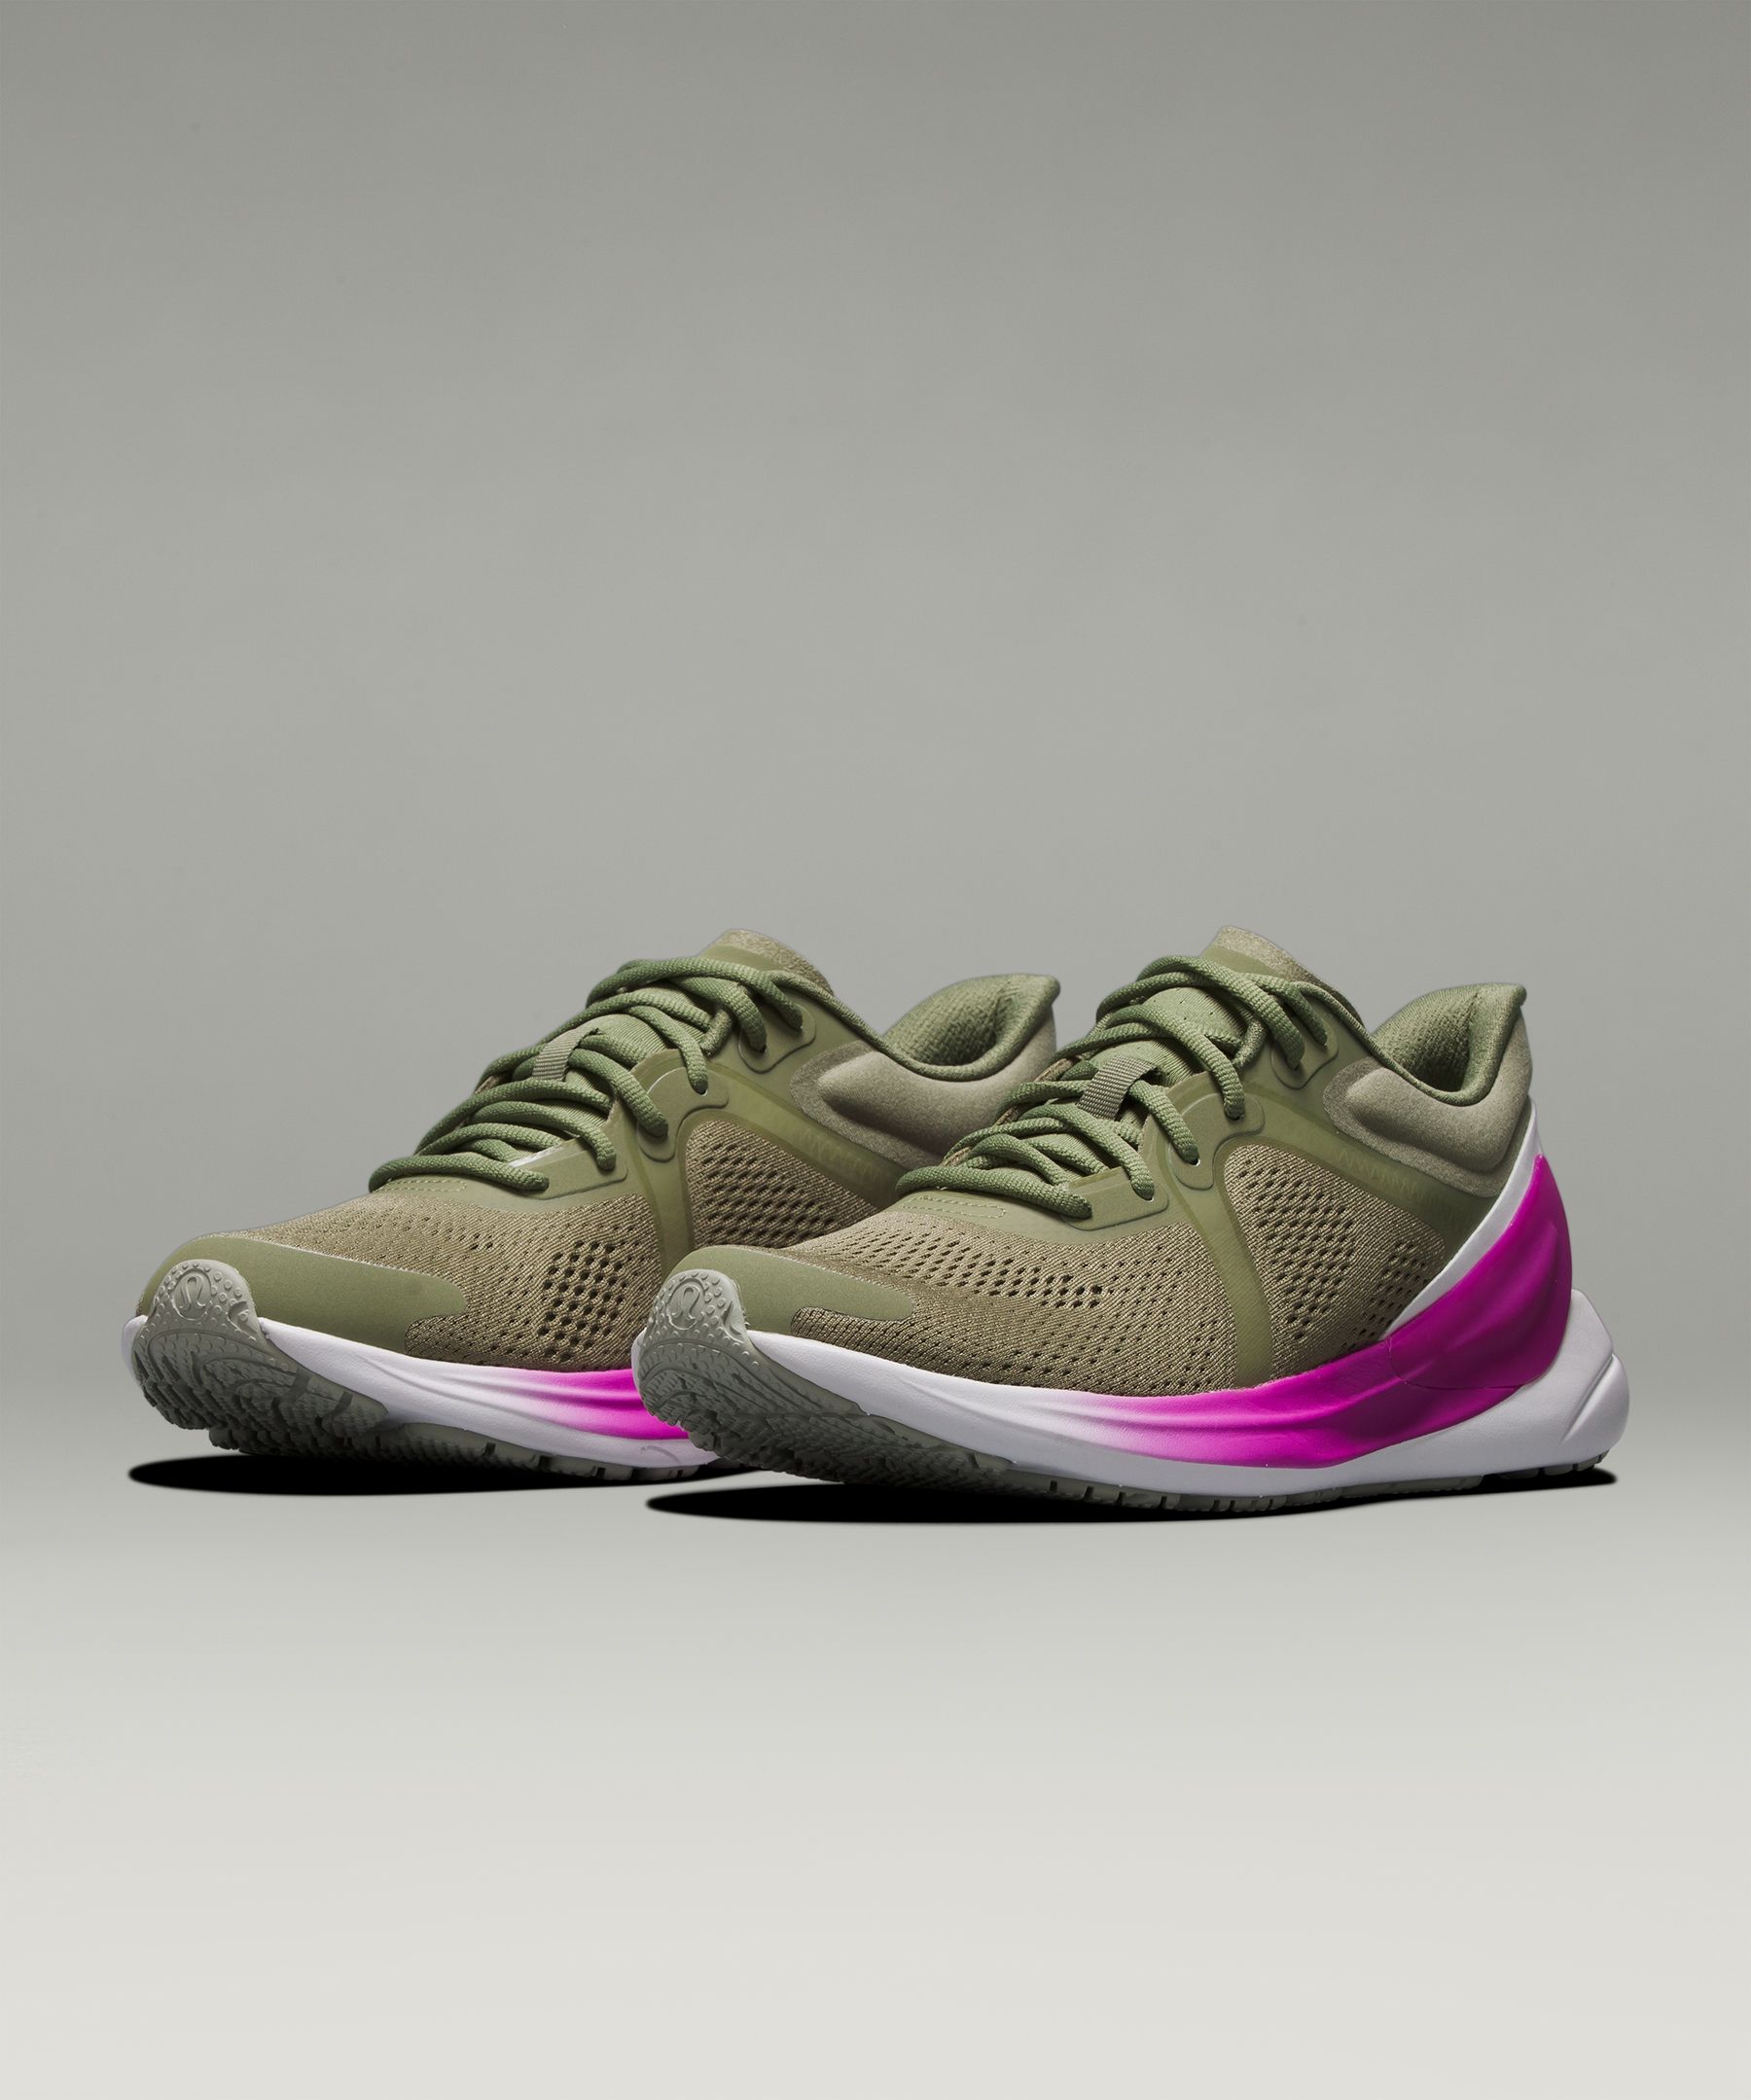 Lululemon Blissfeel Women's Running Shoes In Green/olive/pink/rosemary  Green/purple Highlight/white